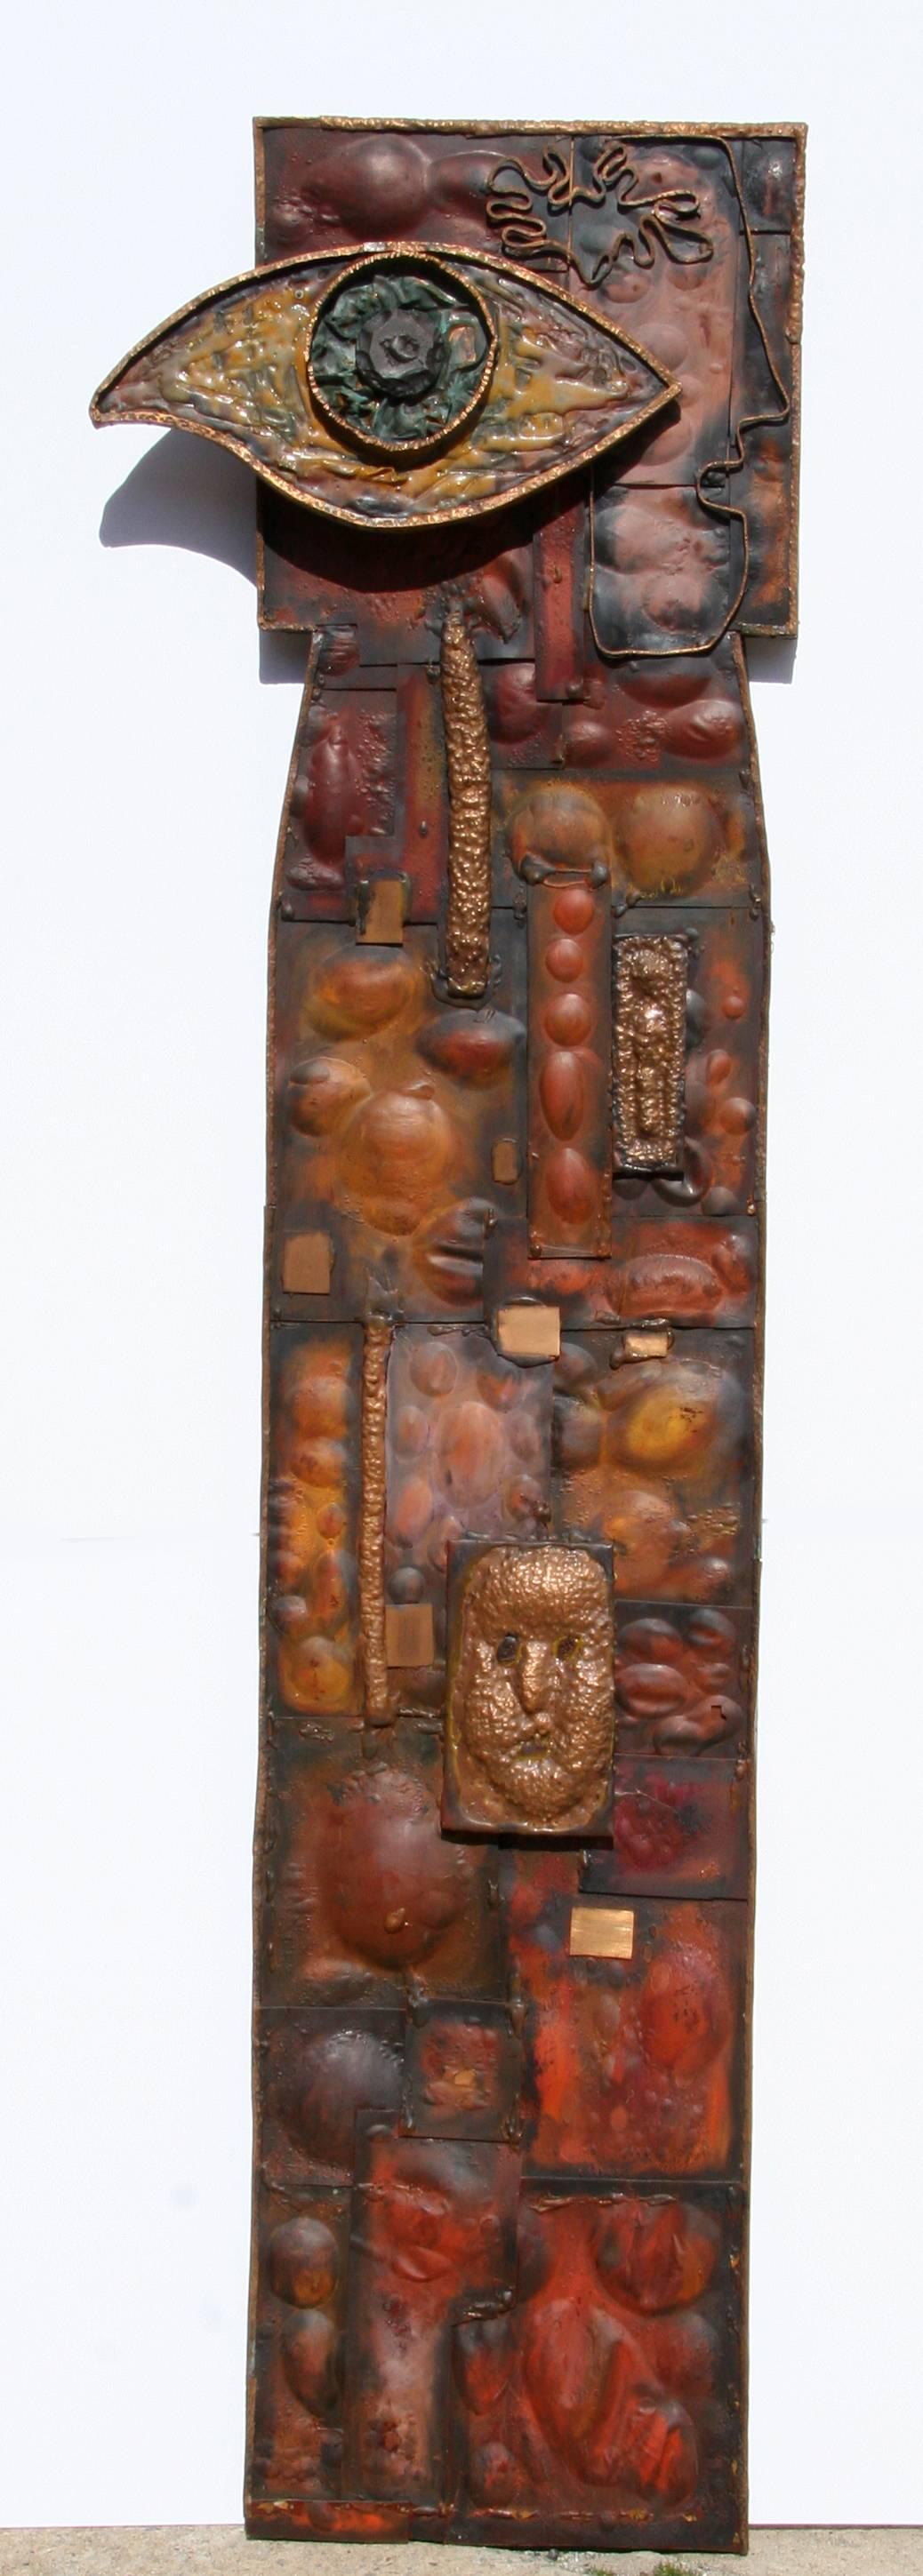 The EYE, sculpture abstraite en cuivre et Wood Wood